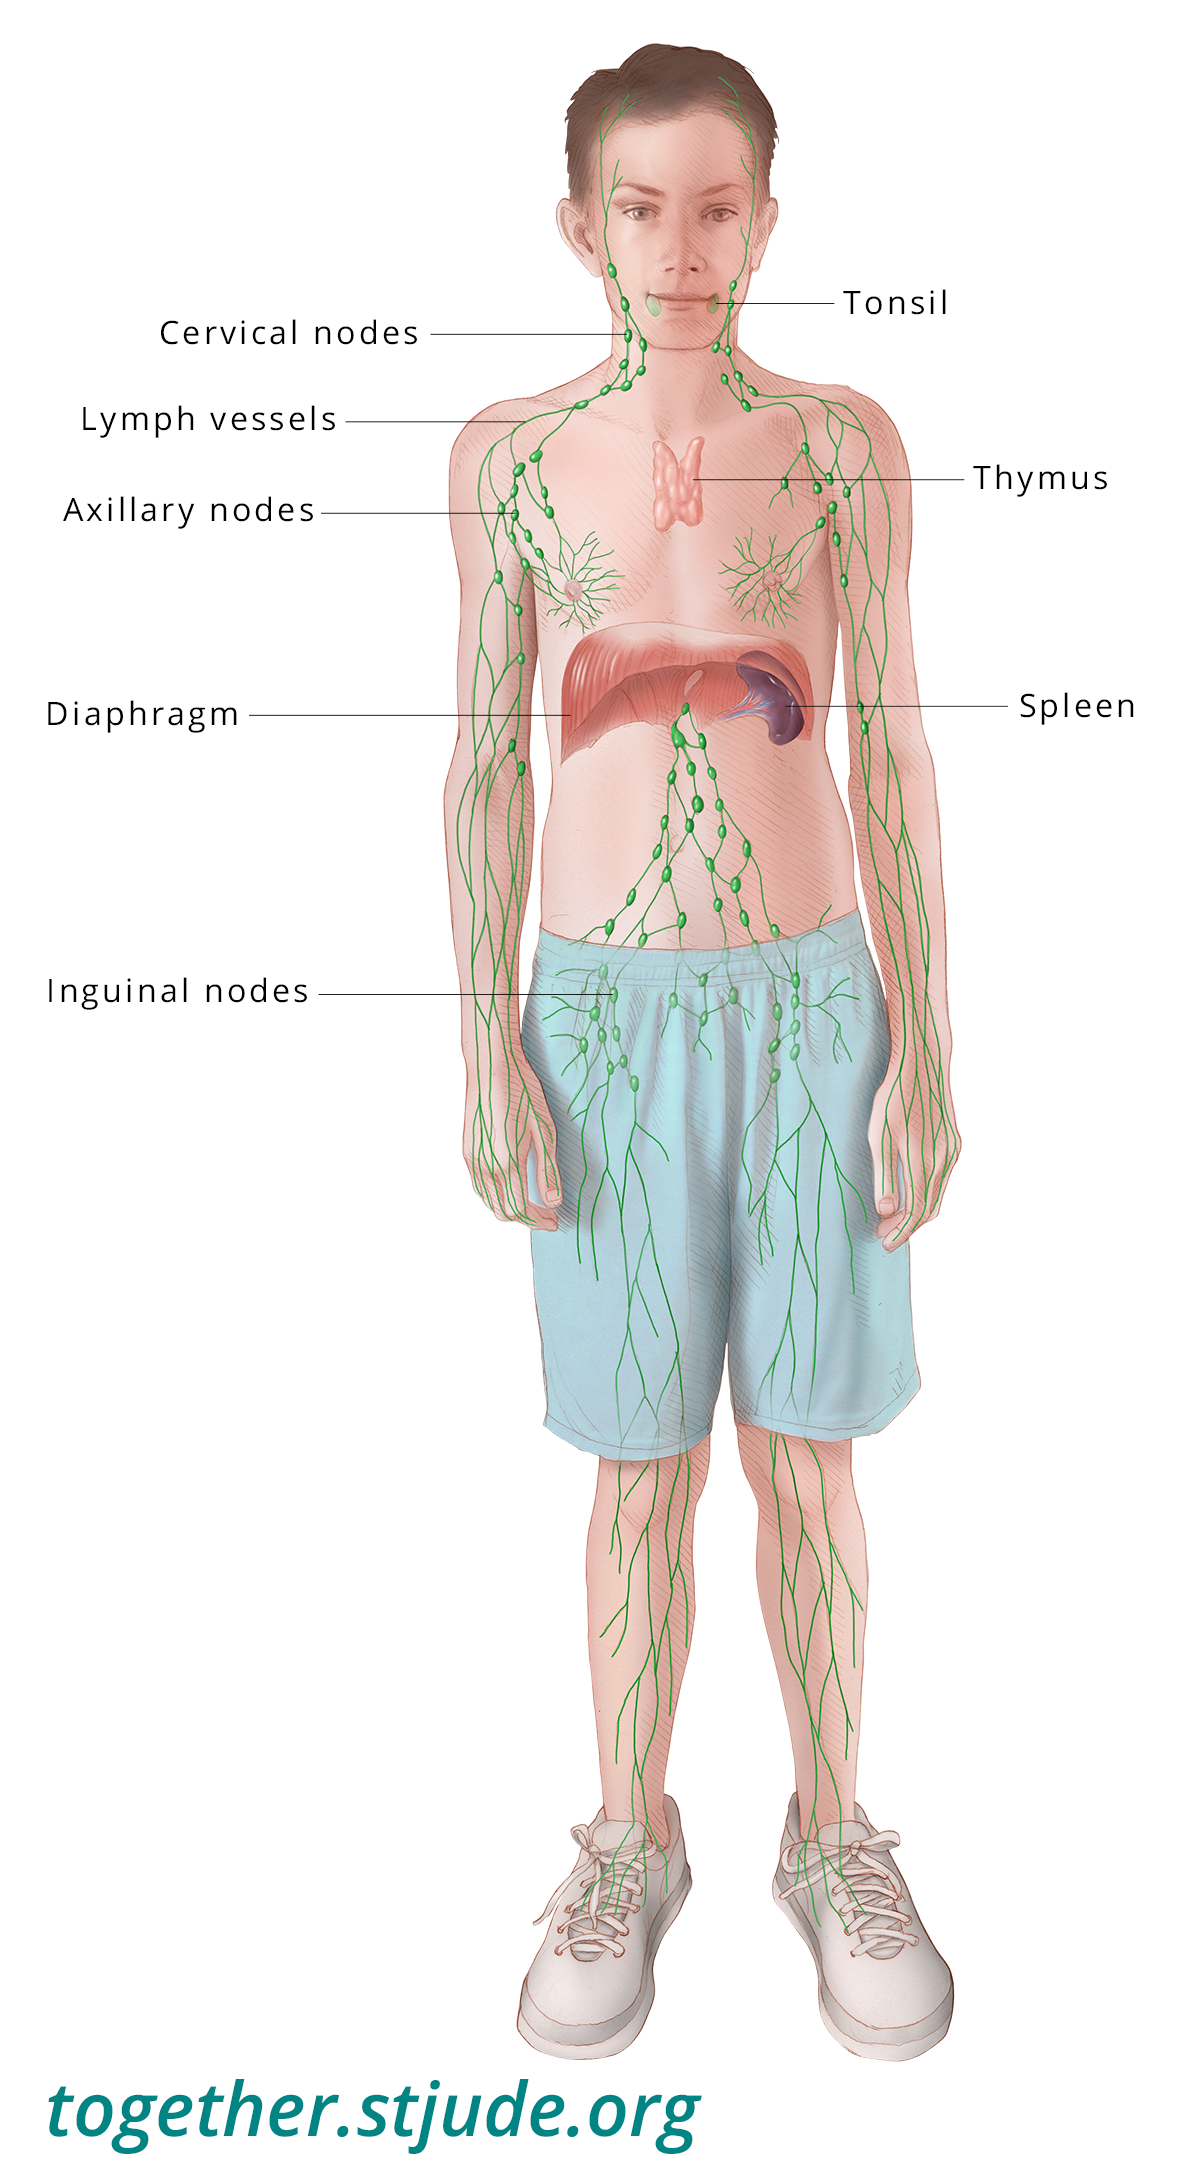 Изображение силуэта ребенка с выделенными и обозначенными лимфатическими узлами и путями соединения.